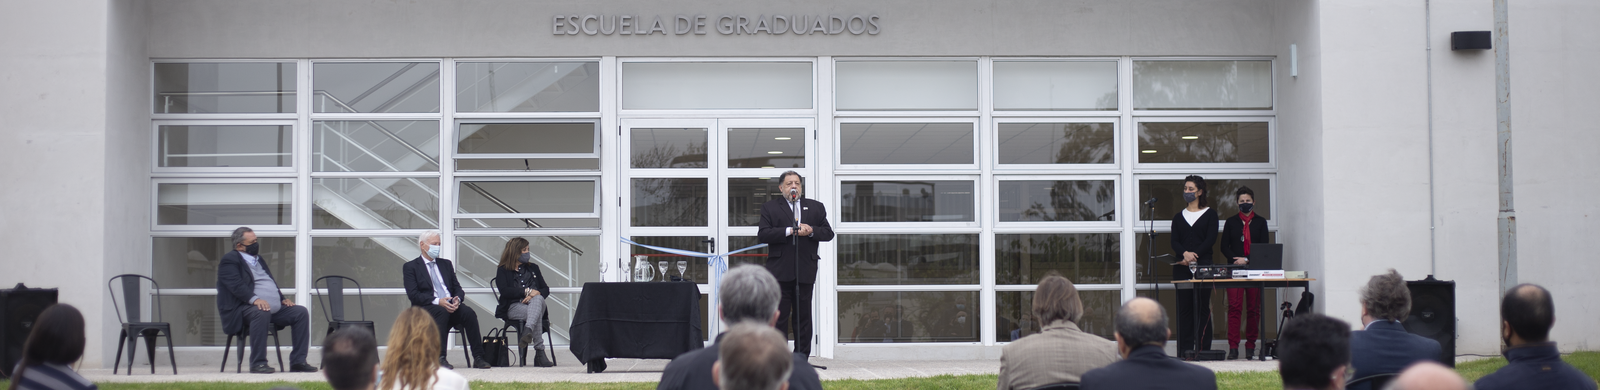 Inauguración escuela de graduados